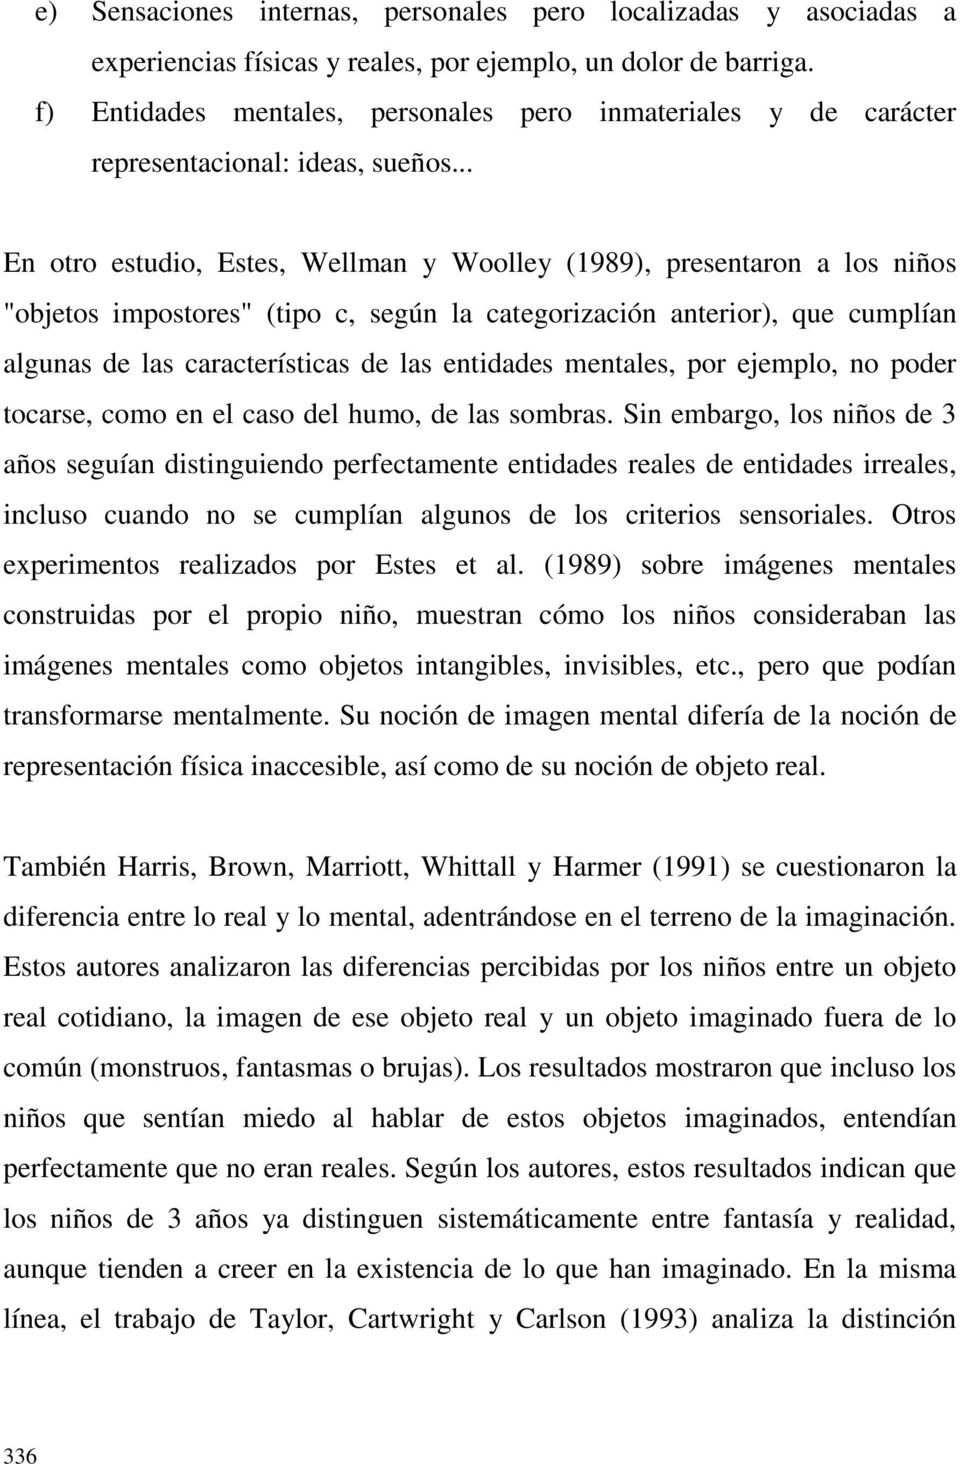 .. En otro estudio, Estes, Wellman y Woolley (1989), presentaron a los niños "objetos impostores" (tipo c, según la categorización anterior), que cumplían algunas de las características de las